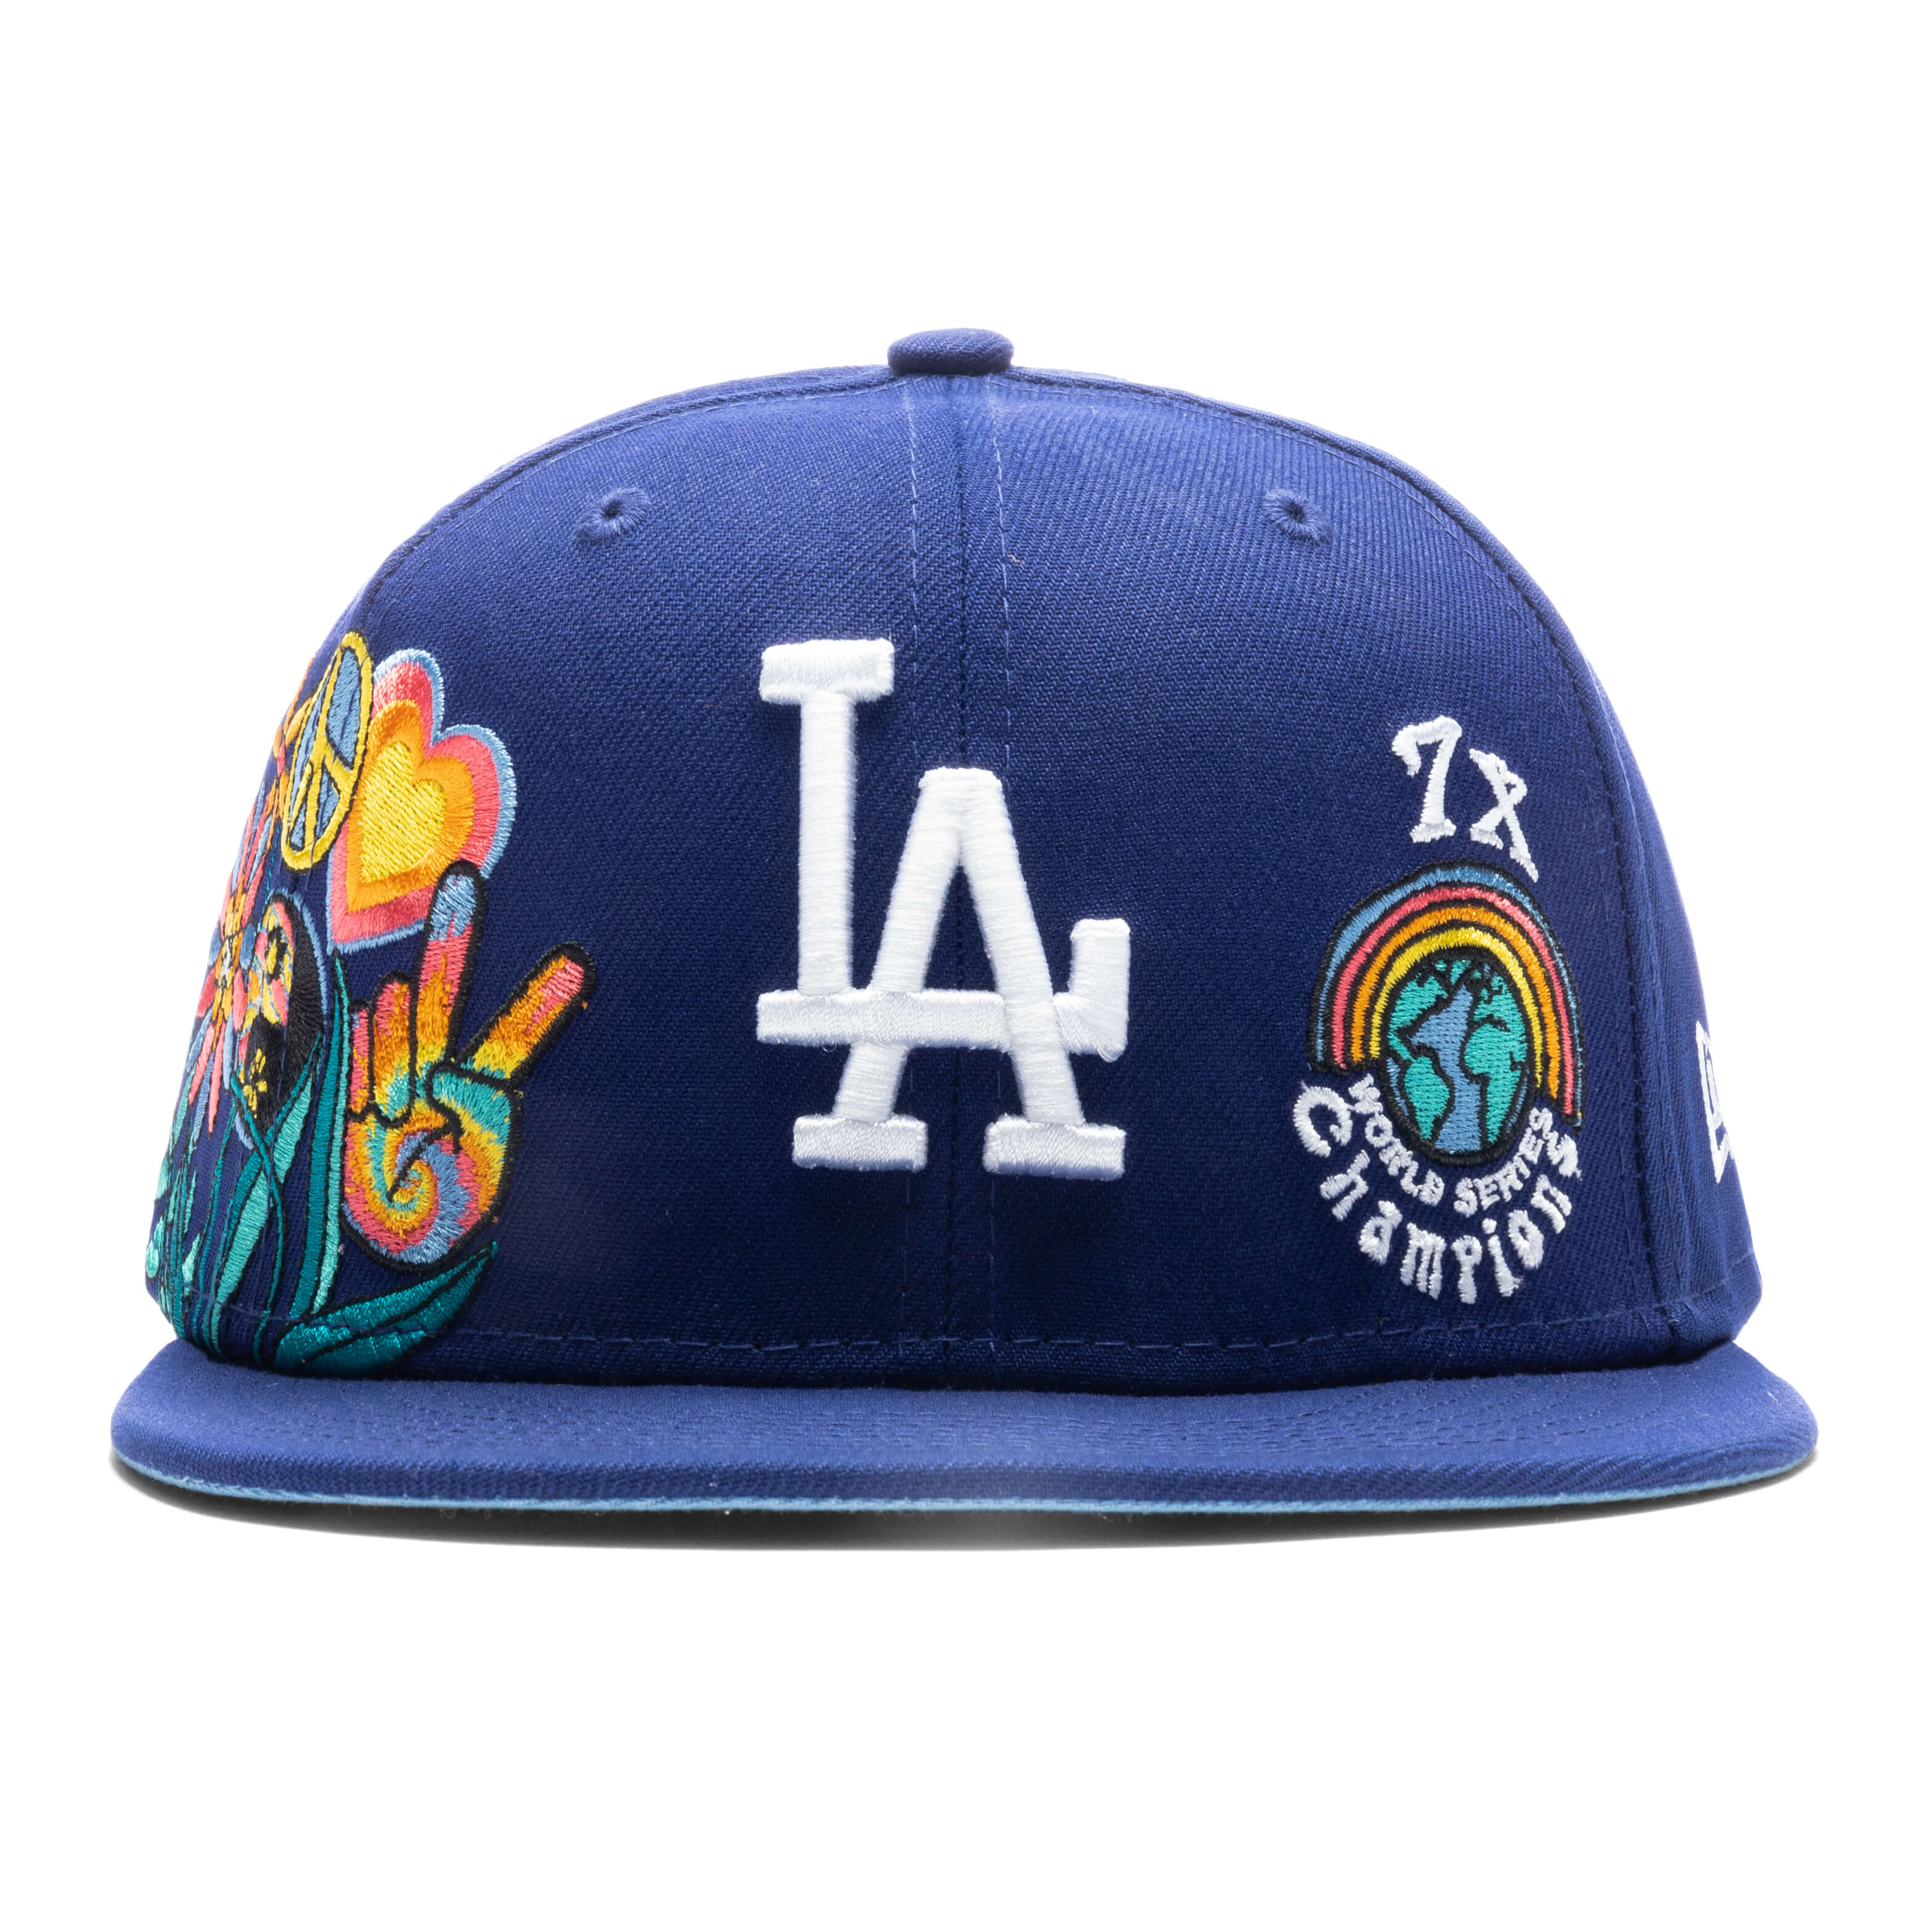 Retro: L.A. Dodgers A's New Era Major League/ Genuine